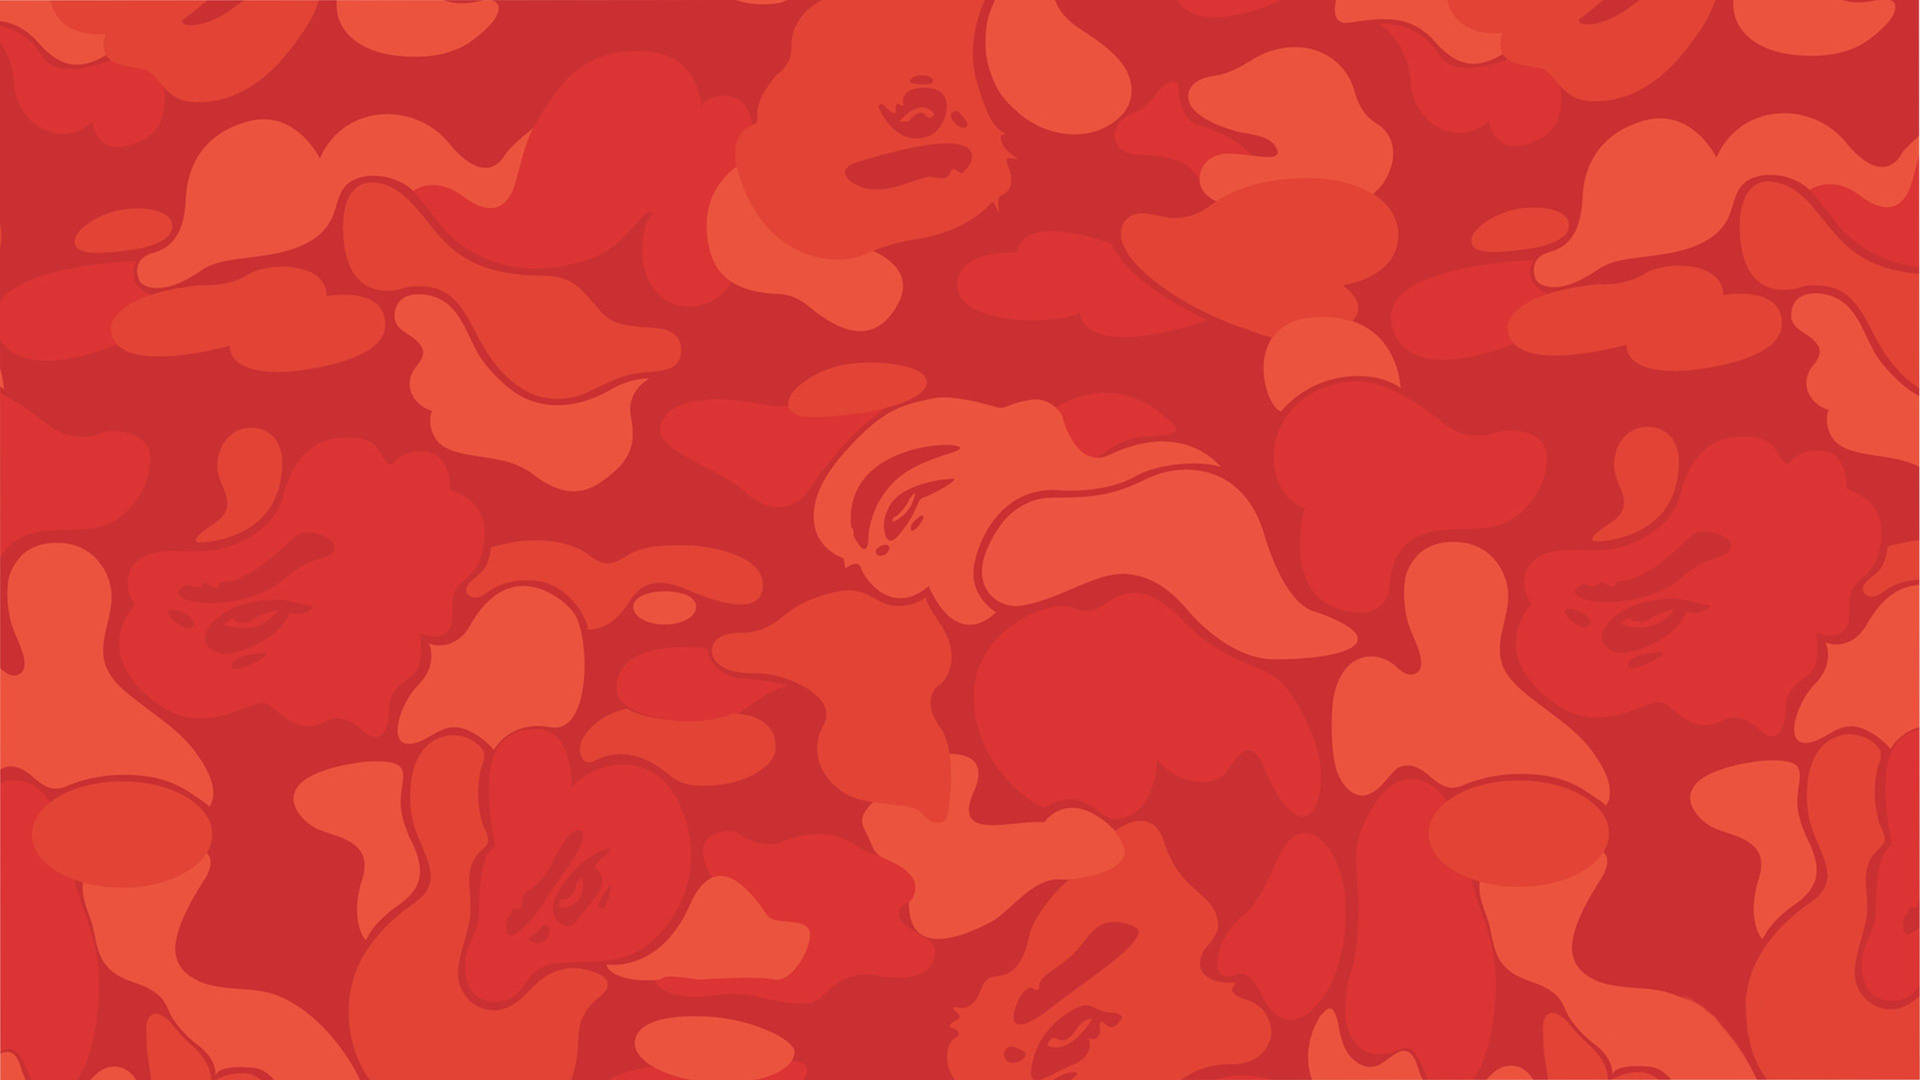 Rotecamouflage - Sticht Aus Der Menge Heraus. Wallpaper